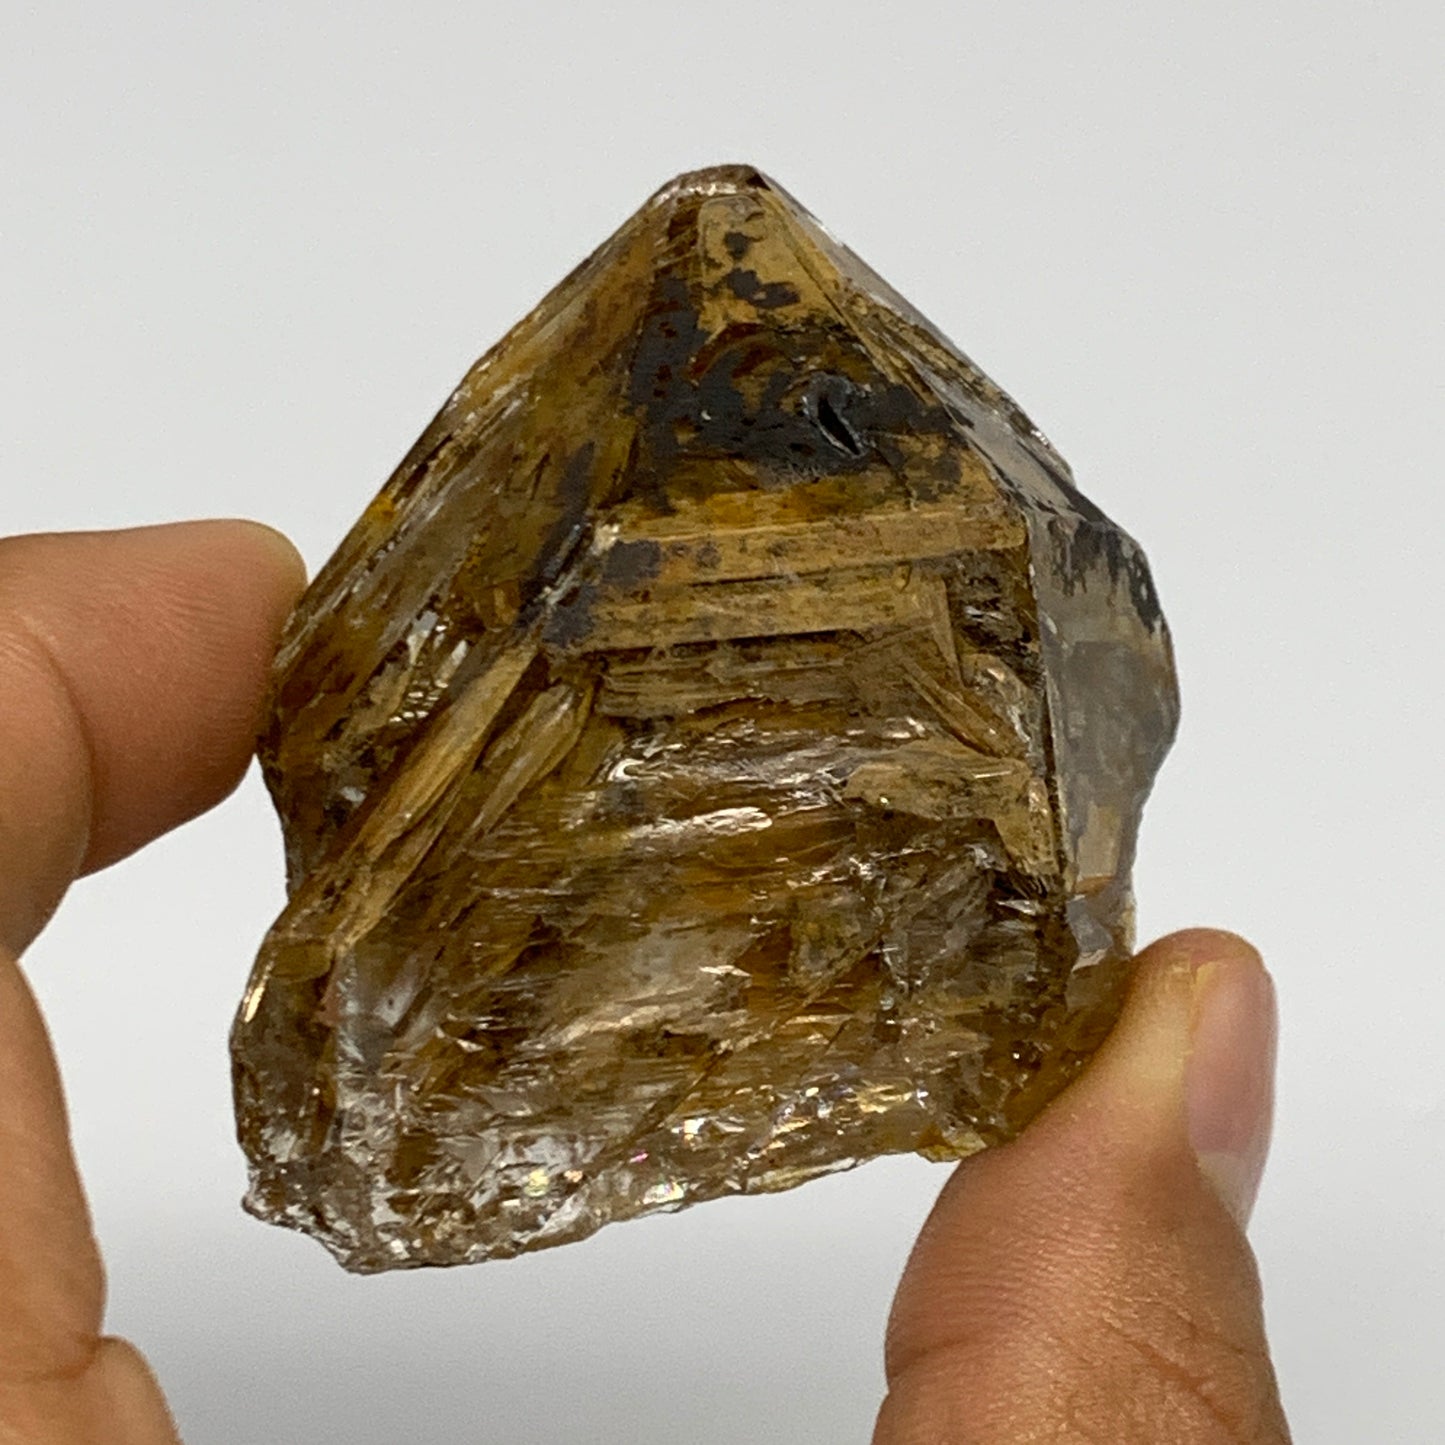 60.7g,  2.2"x1.8"x1.1", Natural Window Quartz Crystal Terminated @Pakistan,B2775